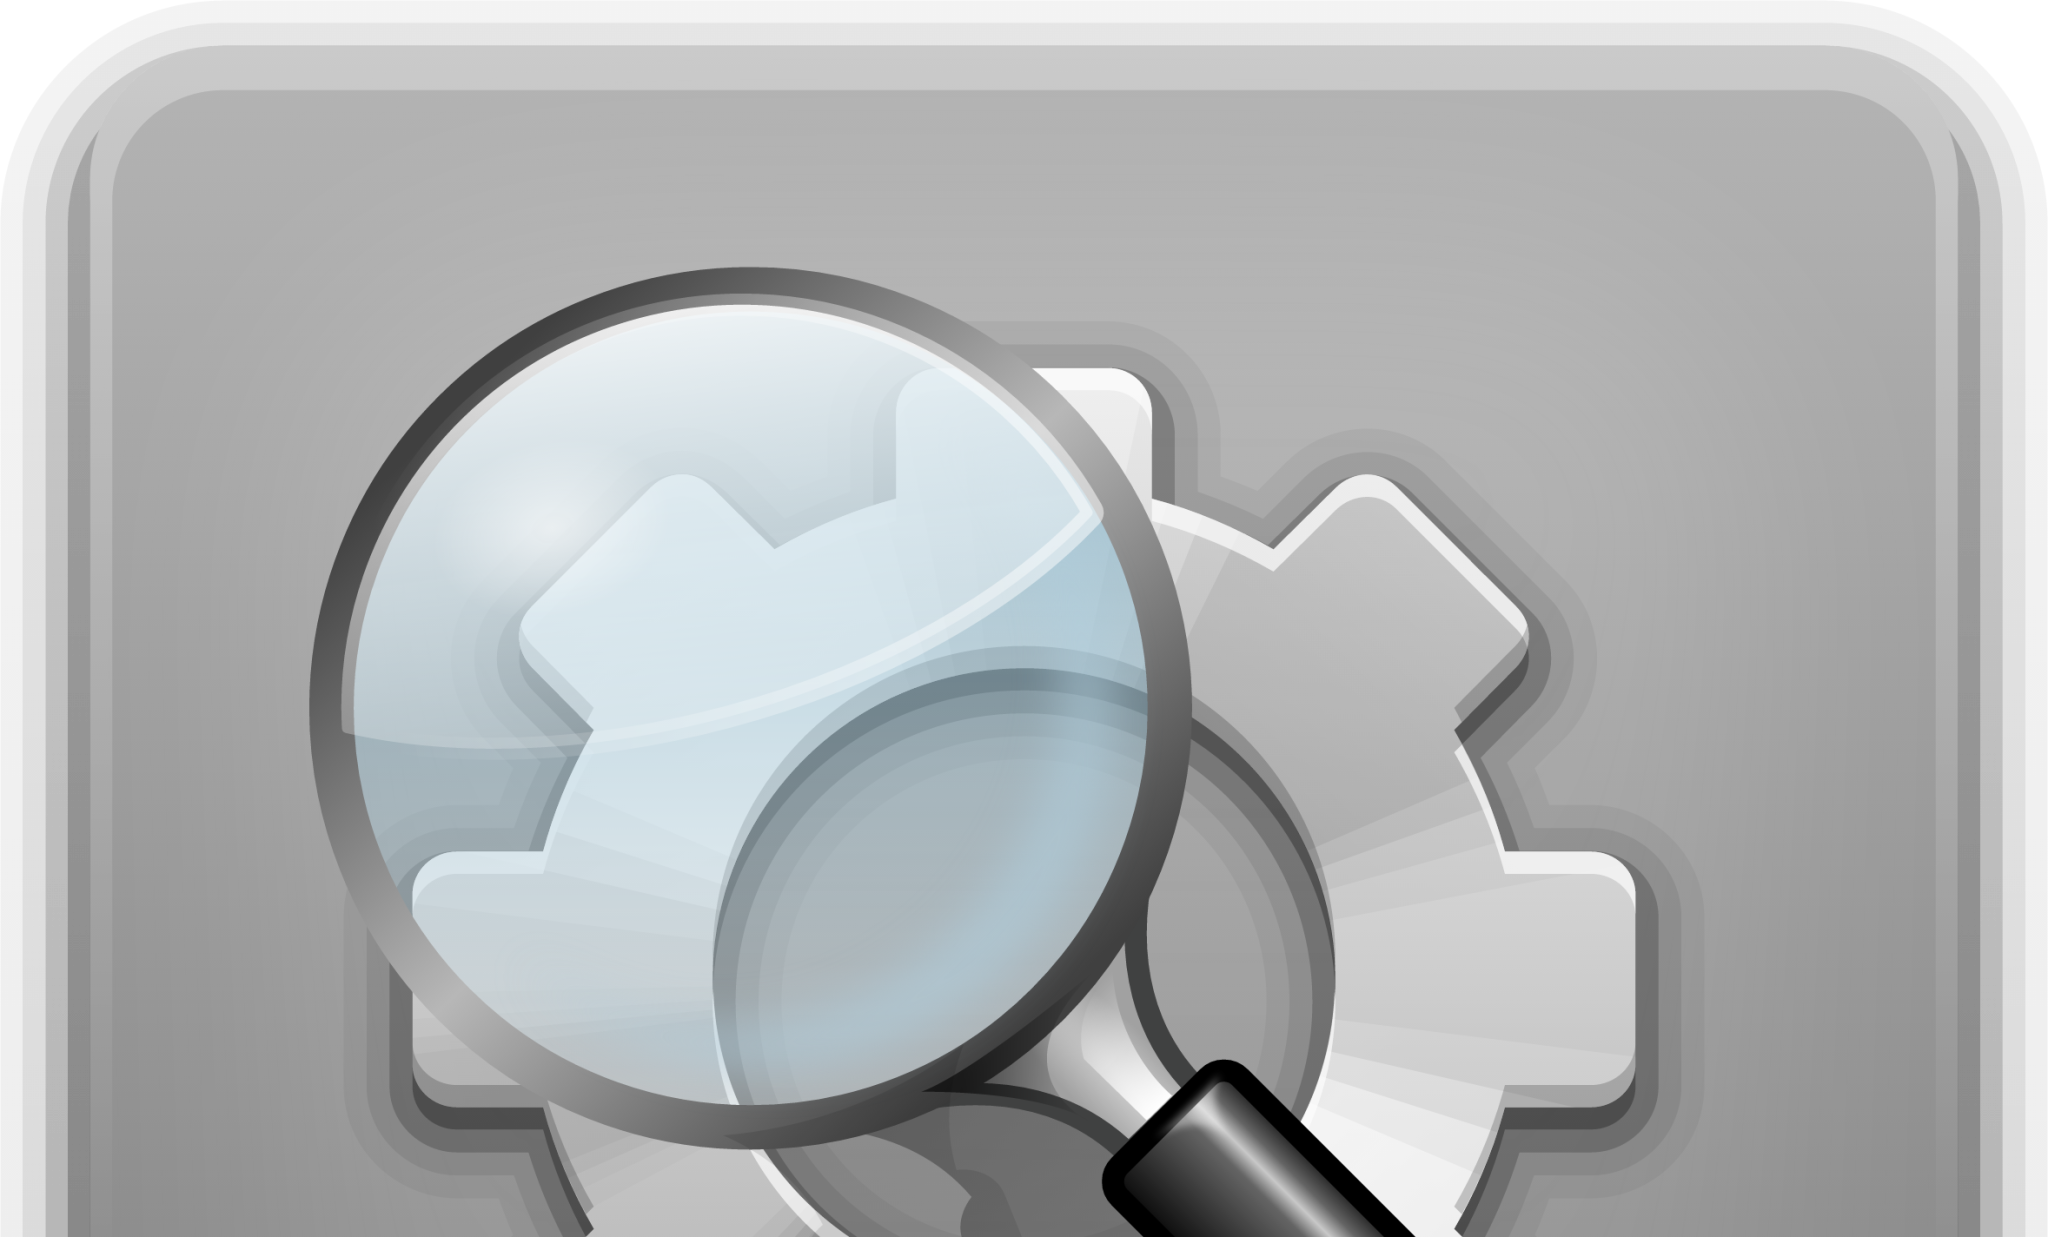 xfce4 appfinder icon